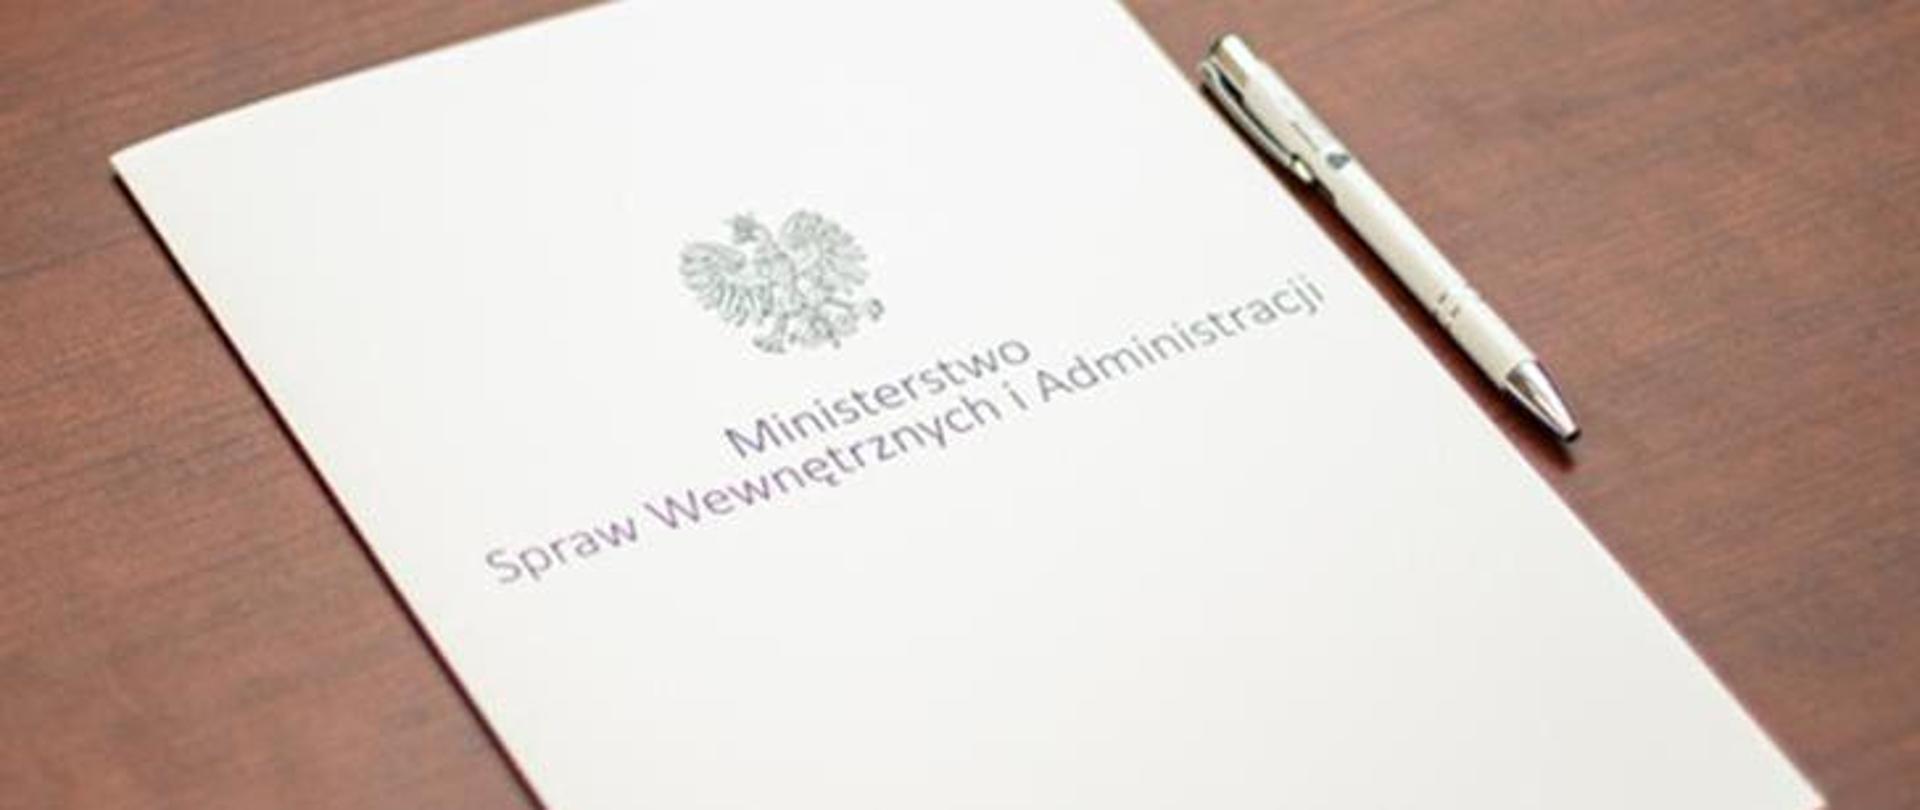 Na biurku leży biała teczka z napisem Ministerstwo Spraw Wewnętrznych i Administracji. Obok teczki leży biały długopis.